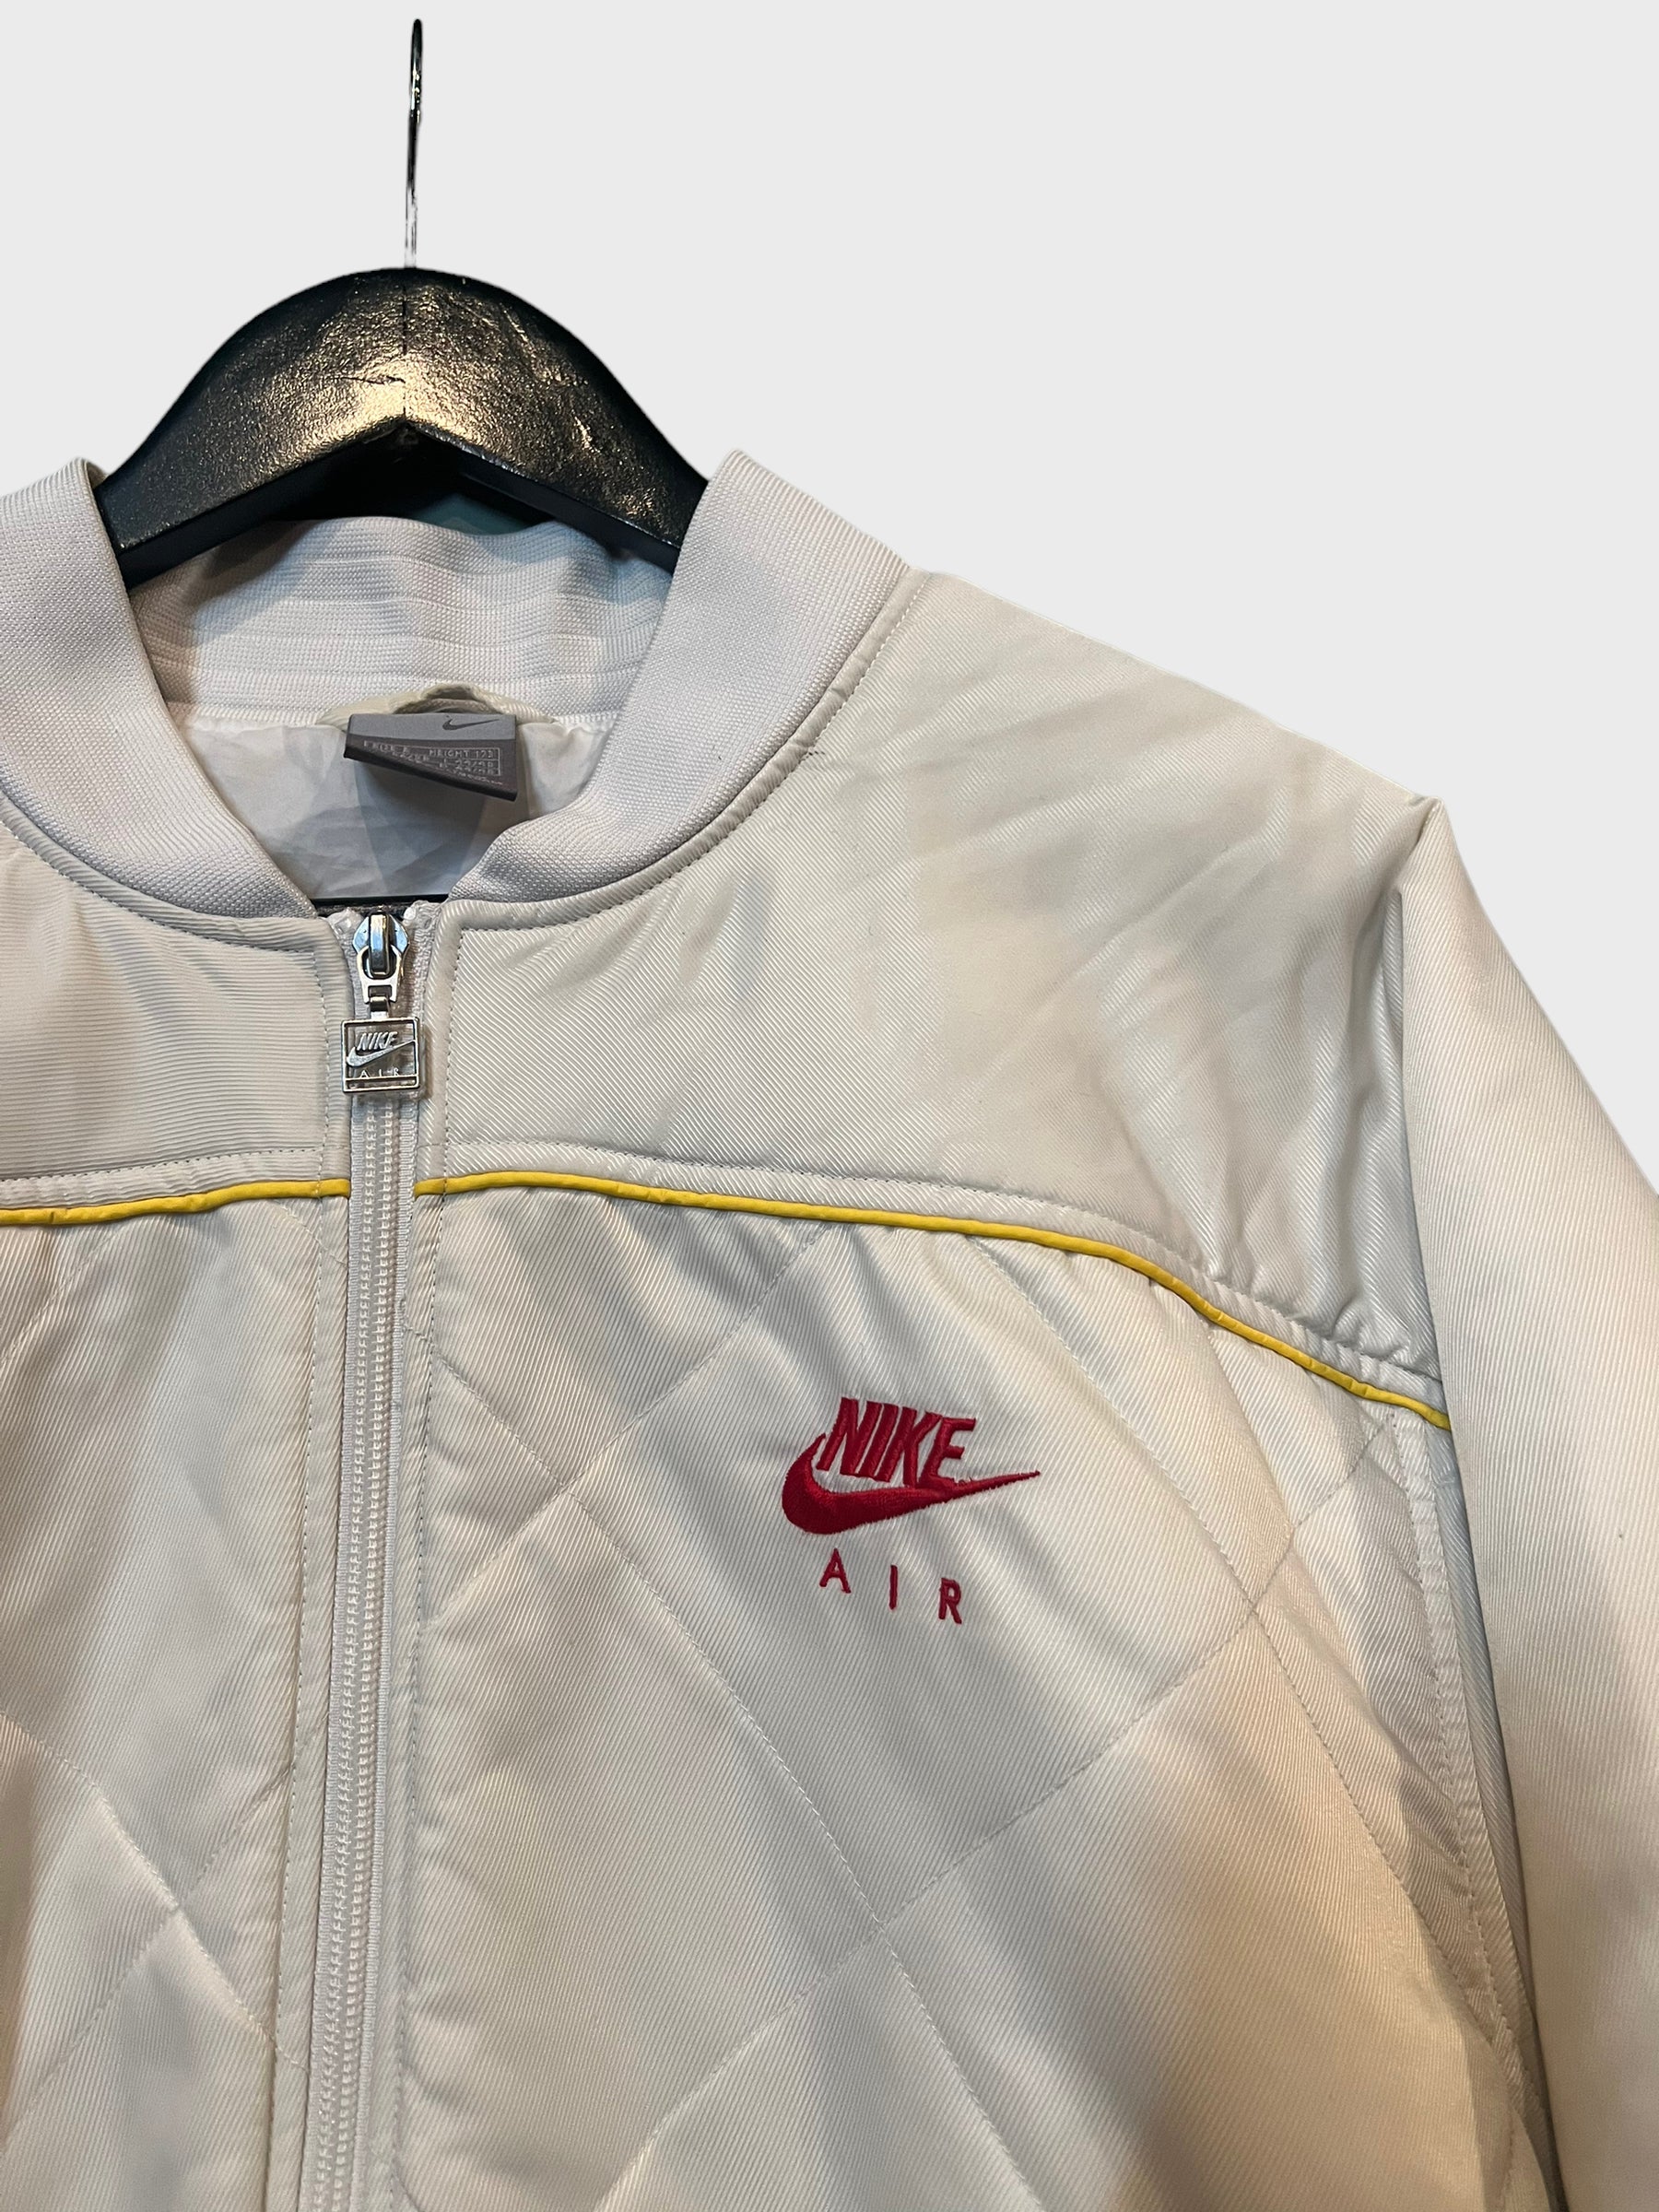 Nike Vintage Bomber Jacket